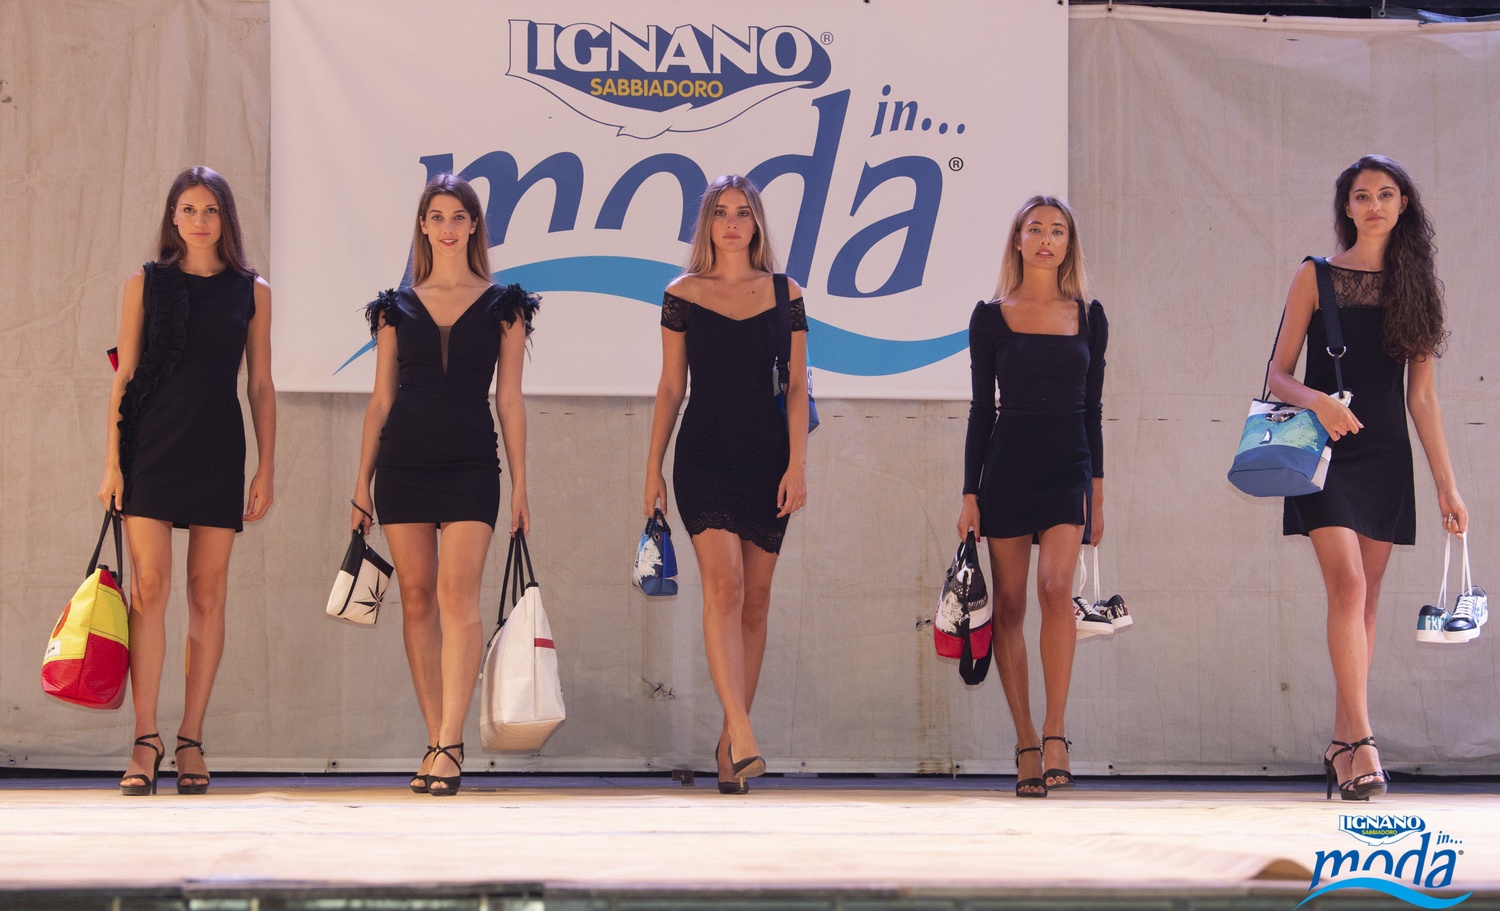 Picture ofLignano in...moda